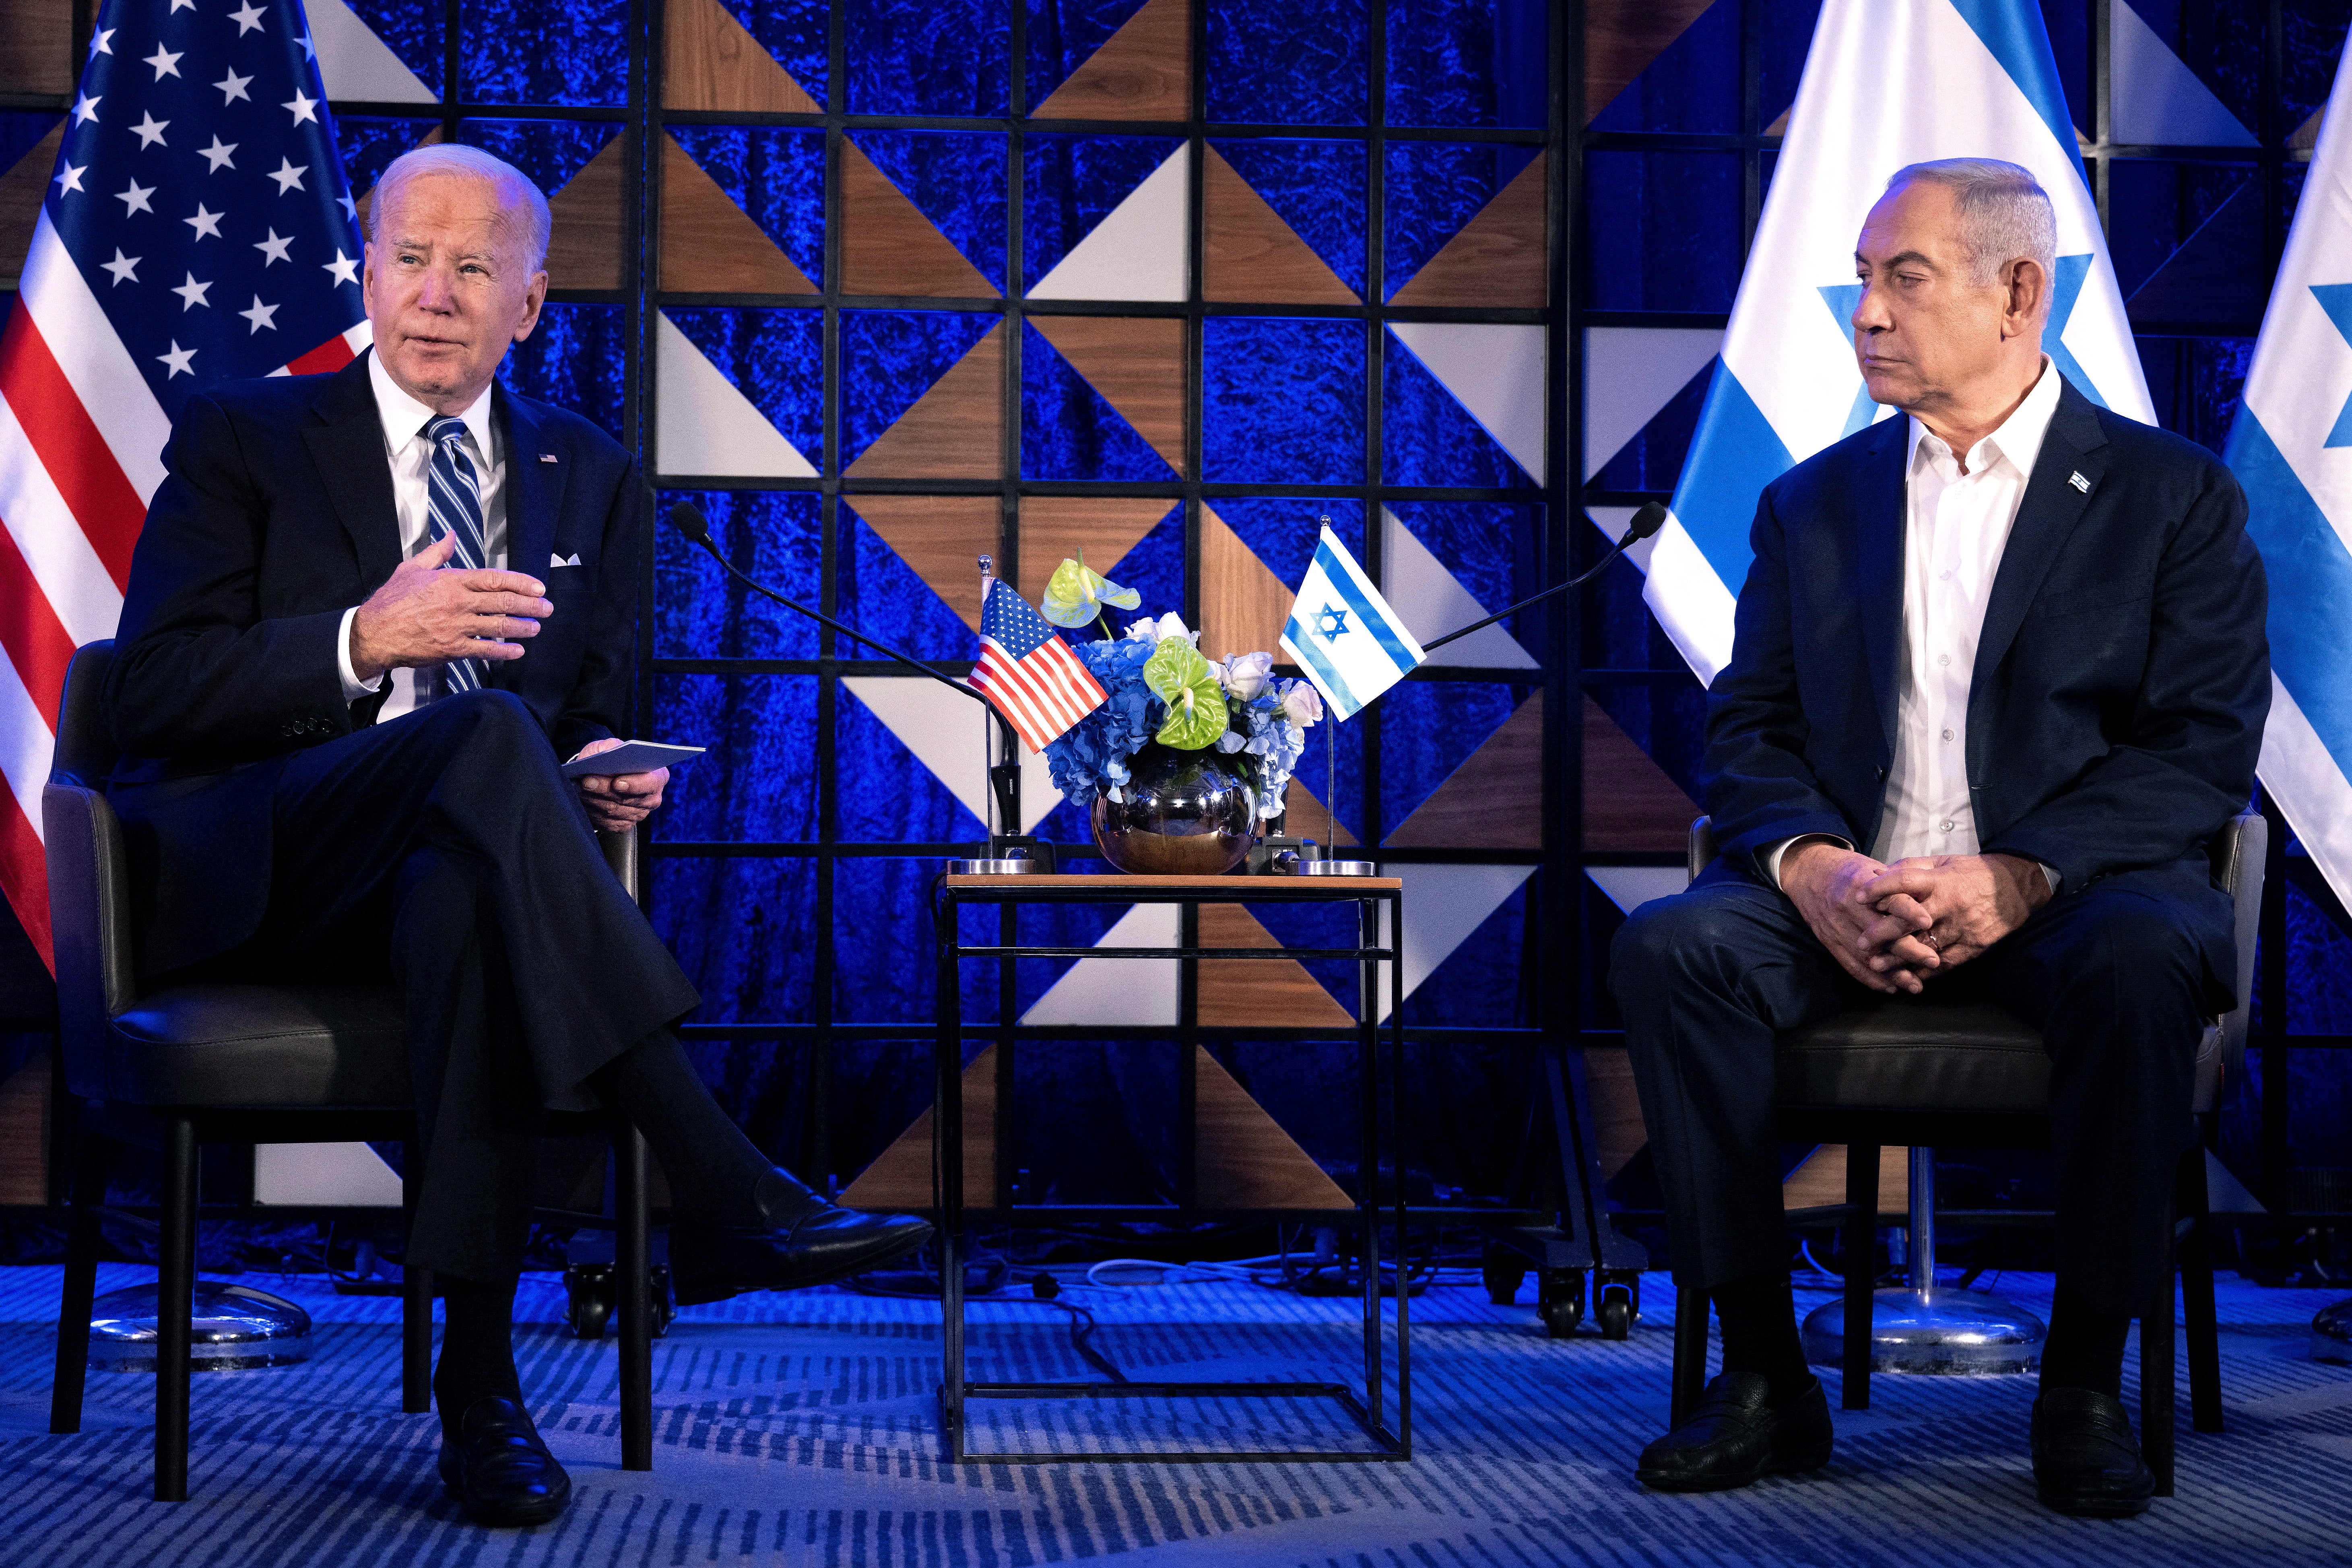 Joe Biden meets with Benjamin Netanyahu in Israel on 13 October